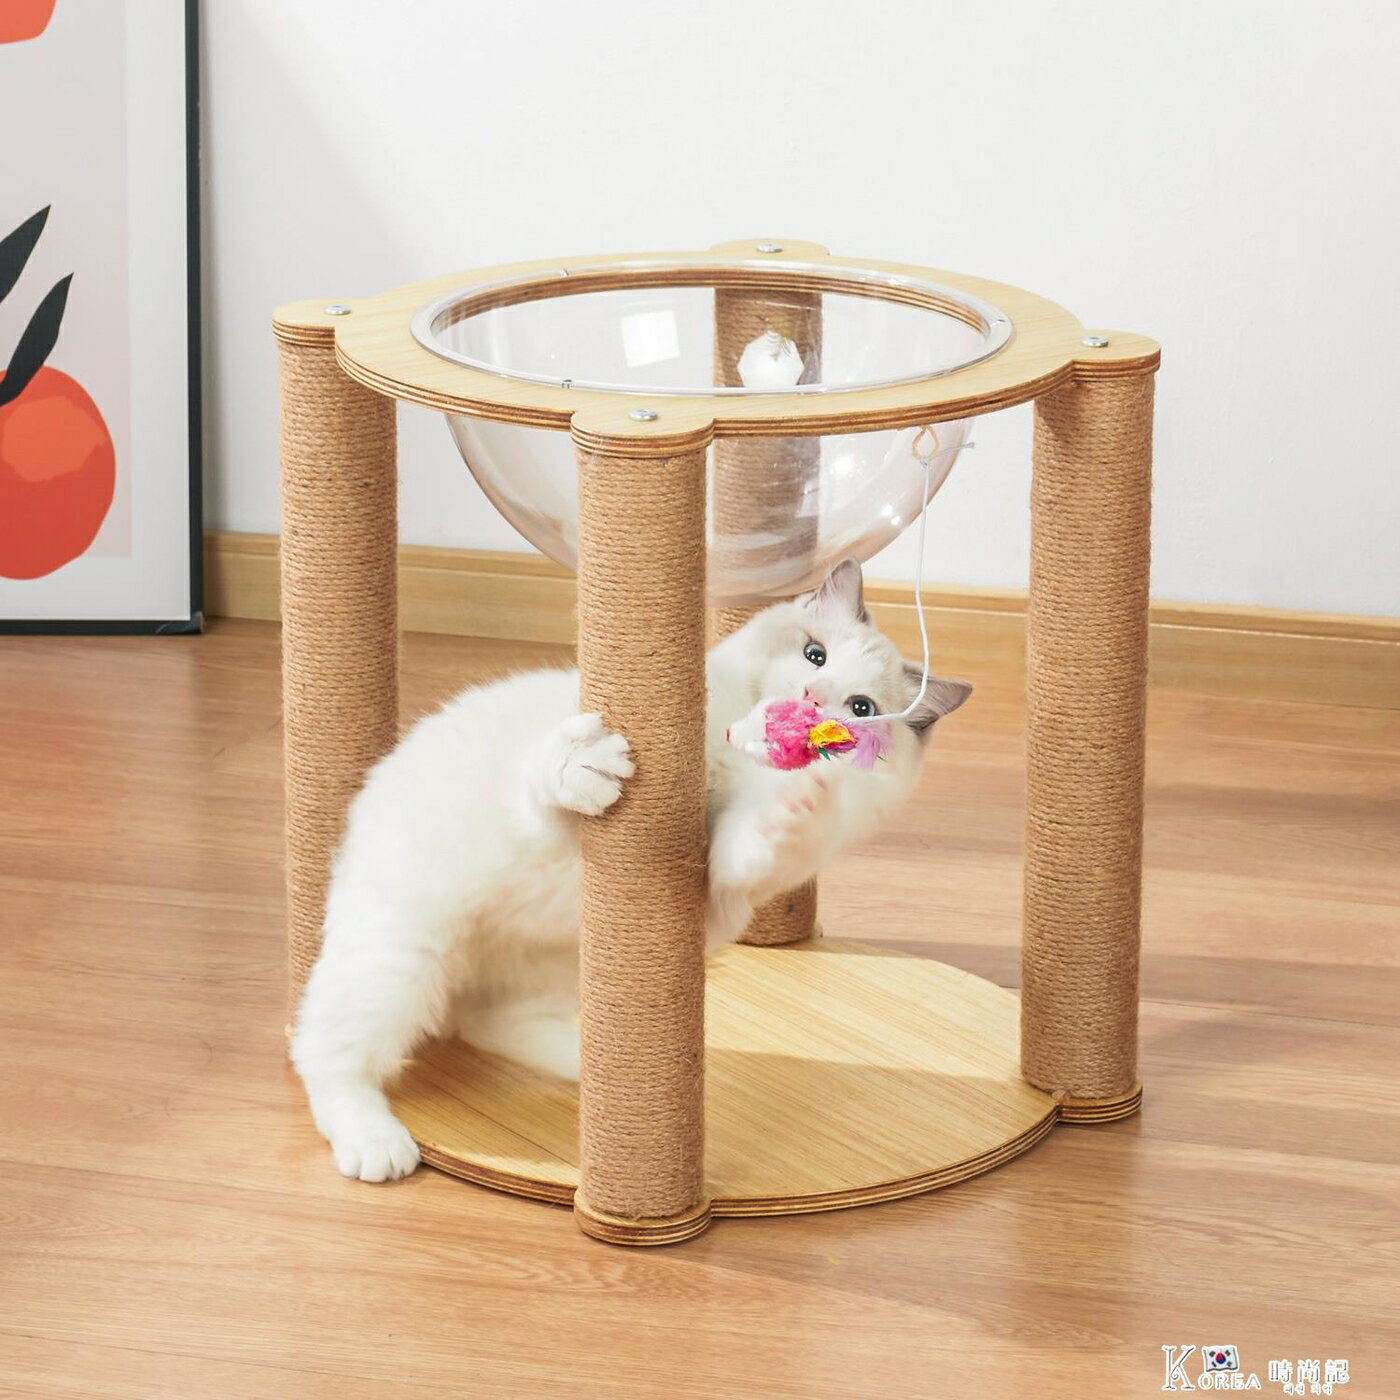 熱銷新品 貓爬架貓跳台貓別墅太空艙實木質小型貓抓架逗貓玩具貓咪用品帶窩